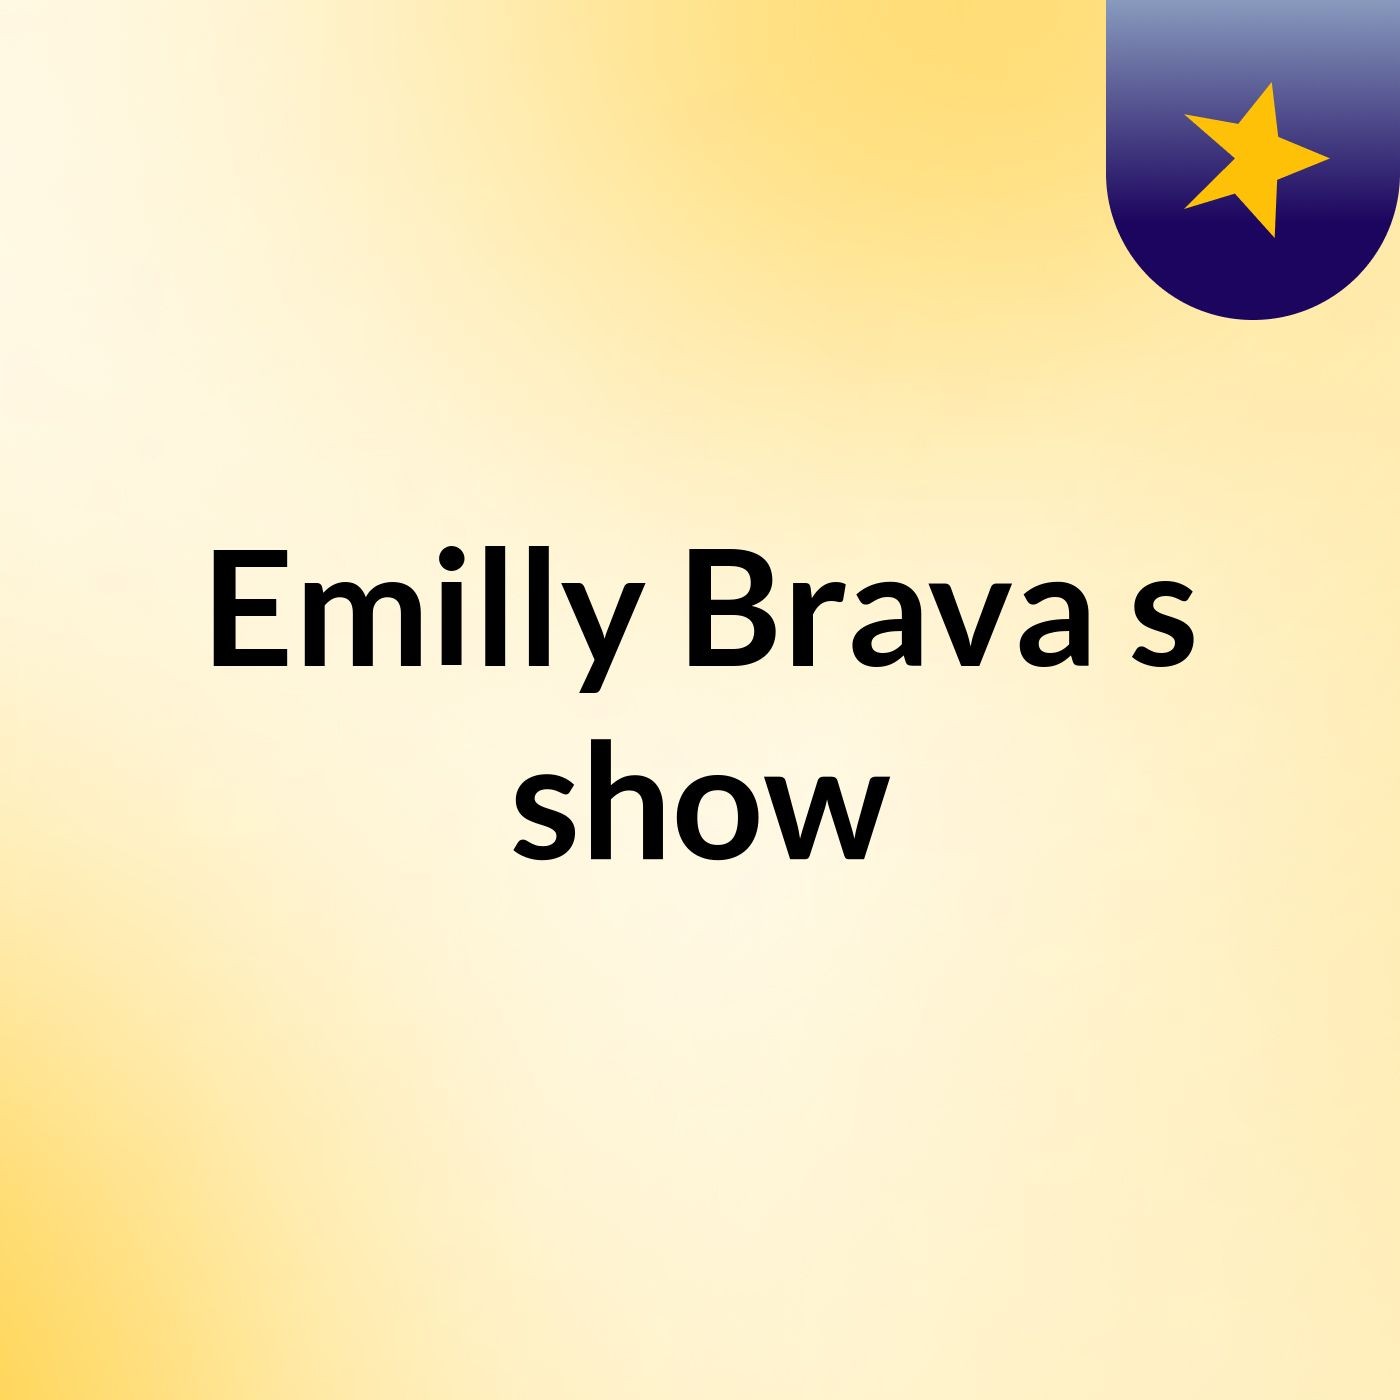 Emilly Brava's show